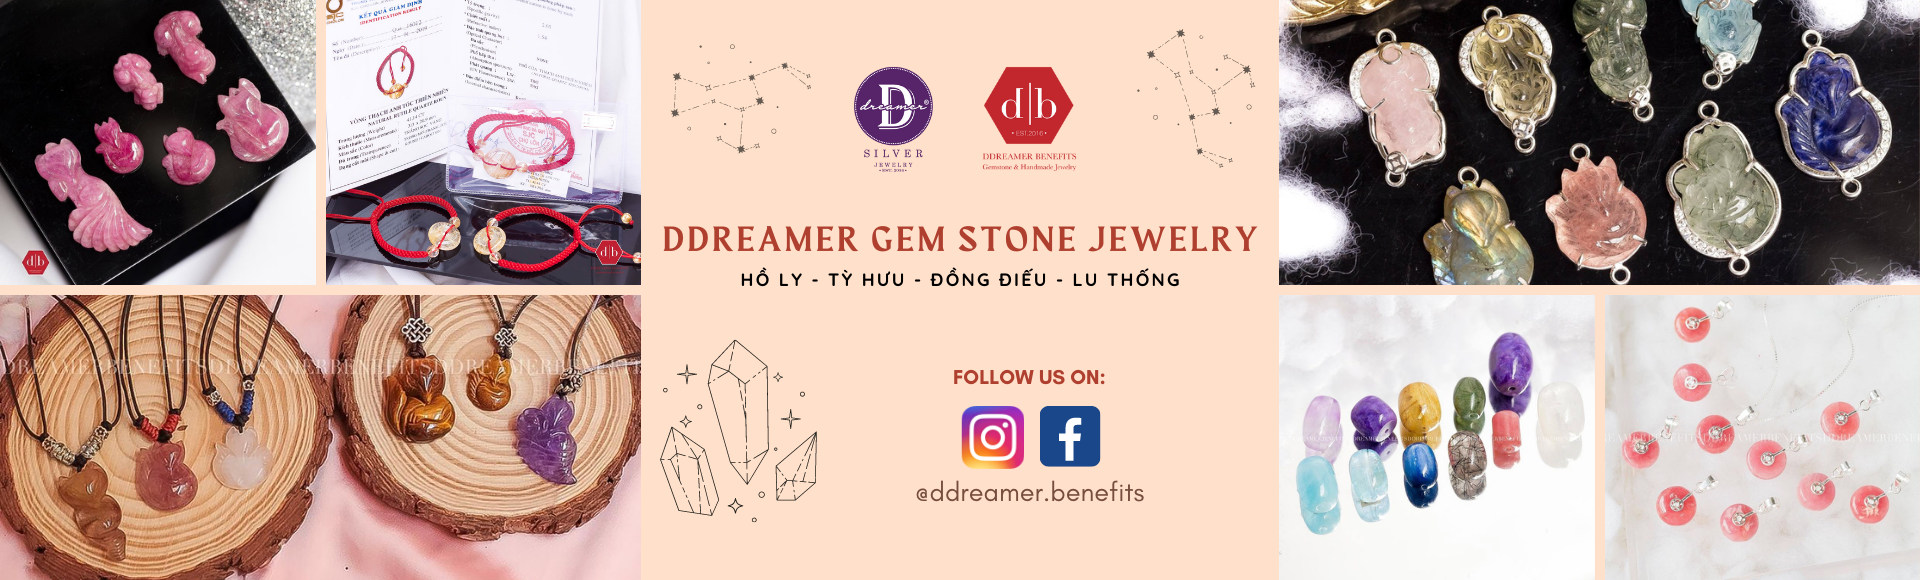 Tổng Hợp Các Mẫu Trang Sức Phong Thuỷ Tỳ Hưu & Hồ Ly Ddreamer Jewelry